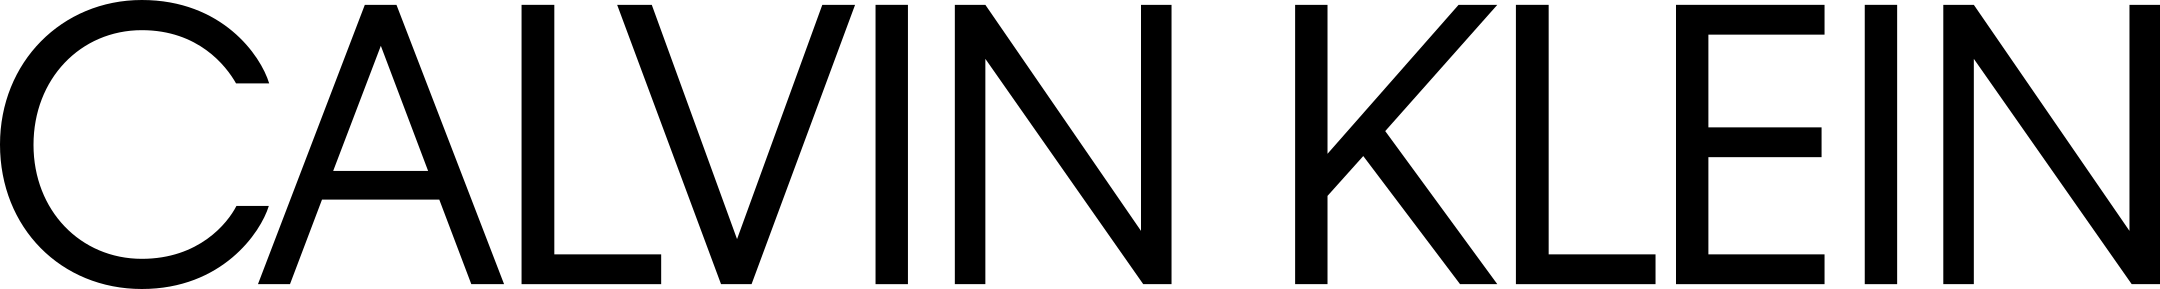 Calvin Klein logo صورة PNG مجانية